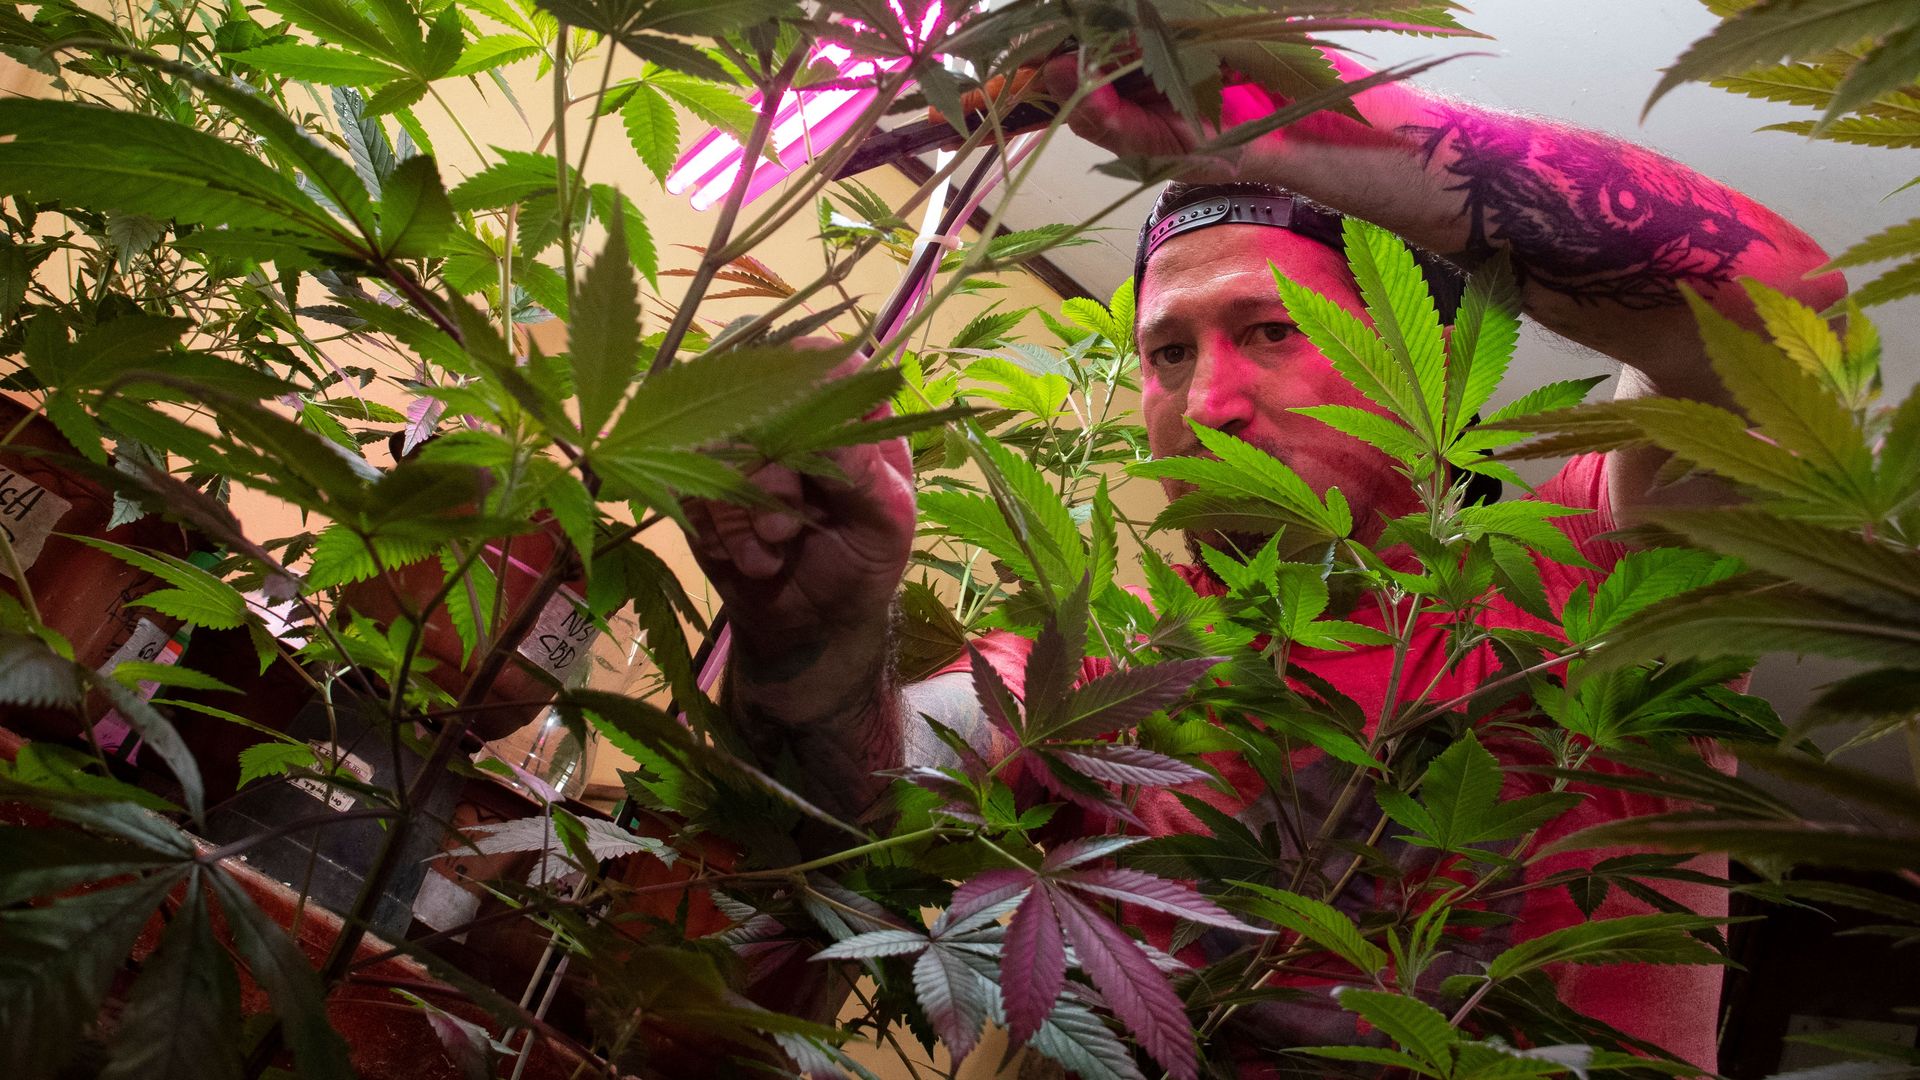 A tattooed man cuts a marijuana plant